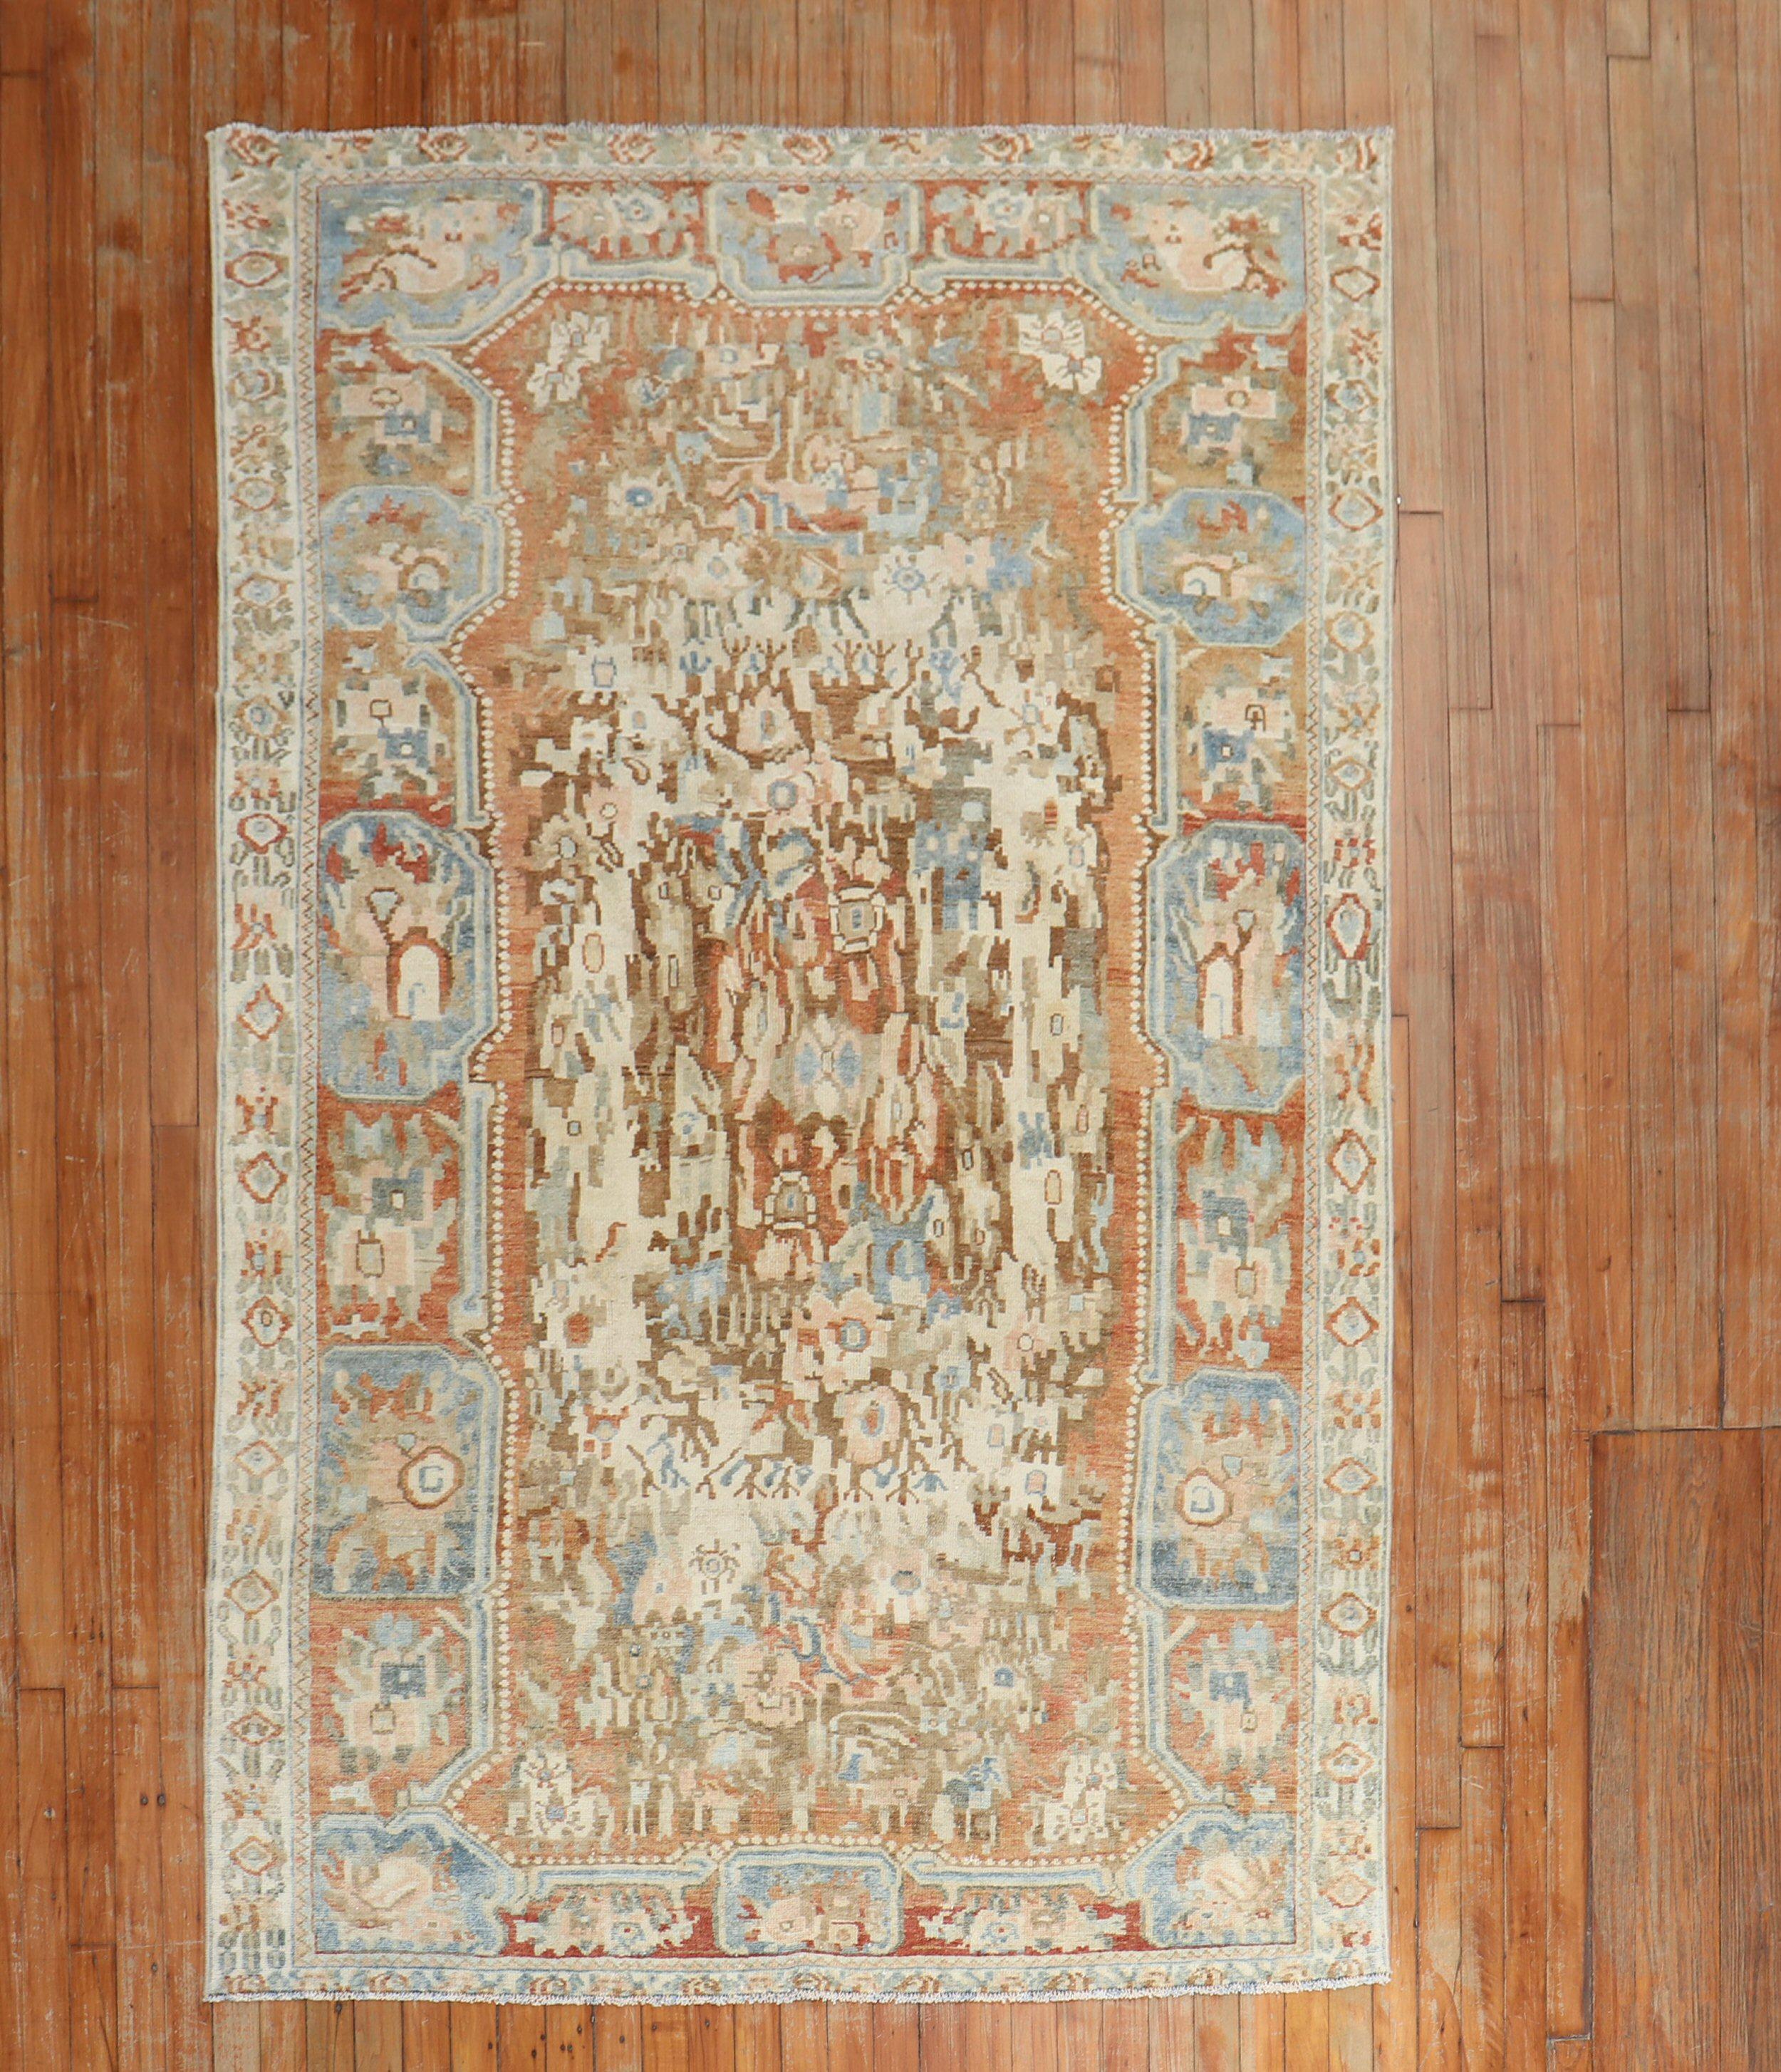 Russischer Karabagh-Teppich aus dem frühen 20. Jahrhundert mit Blumenmotiv in Braun-, Elfenbeinblau- und Aprikosentönen

Maße: 4'9'' x 7'6''.